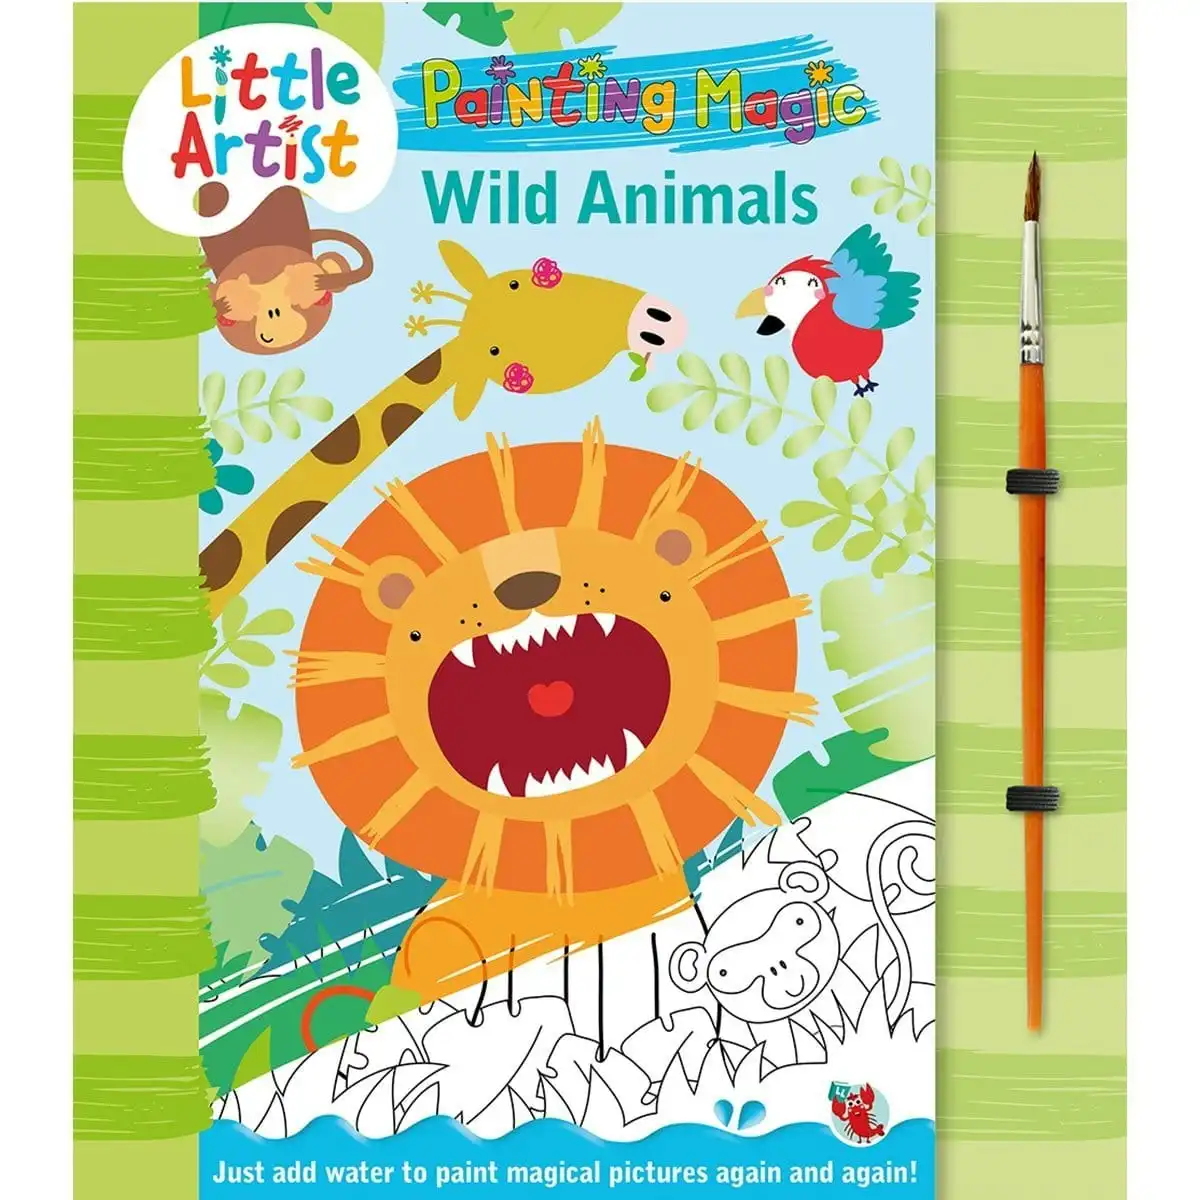 Little Artists - Paint Magic - Wild Animals